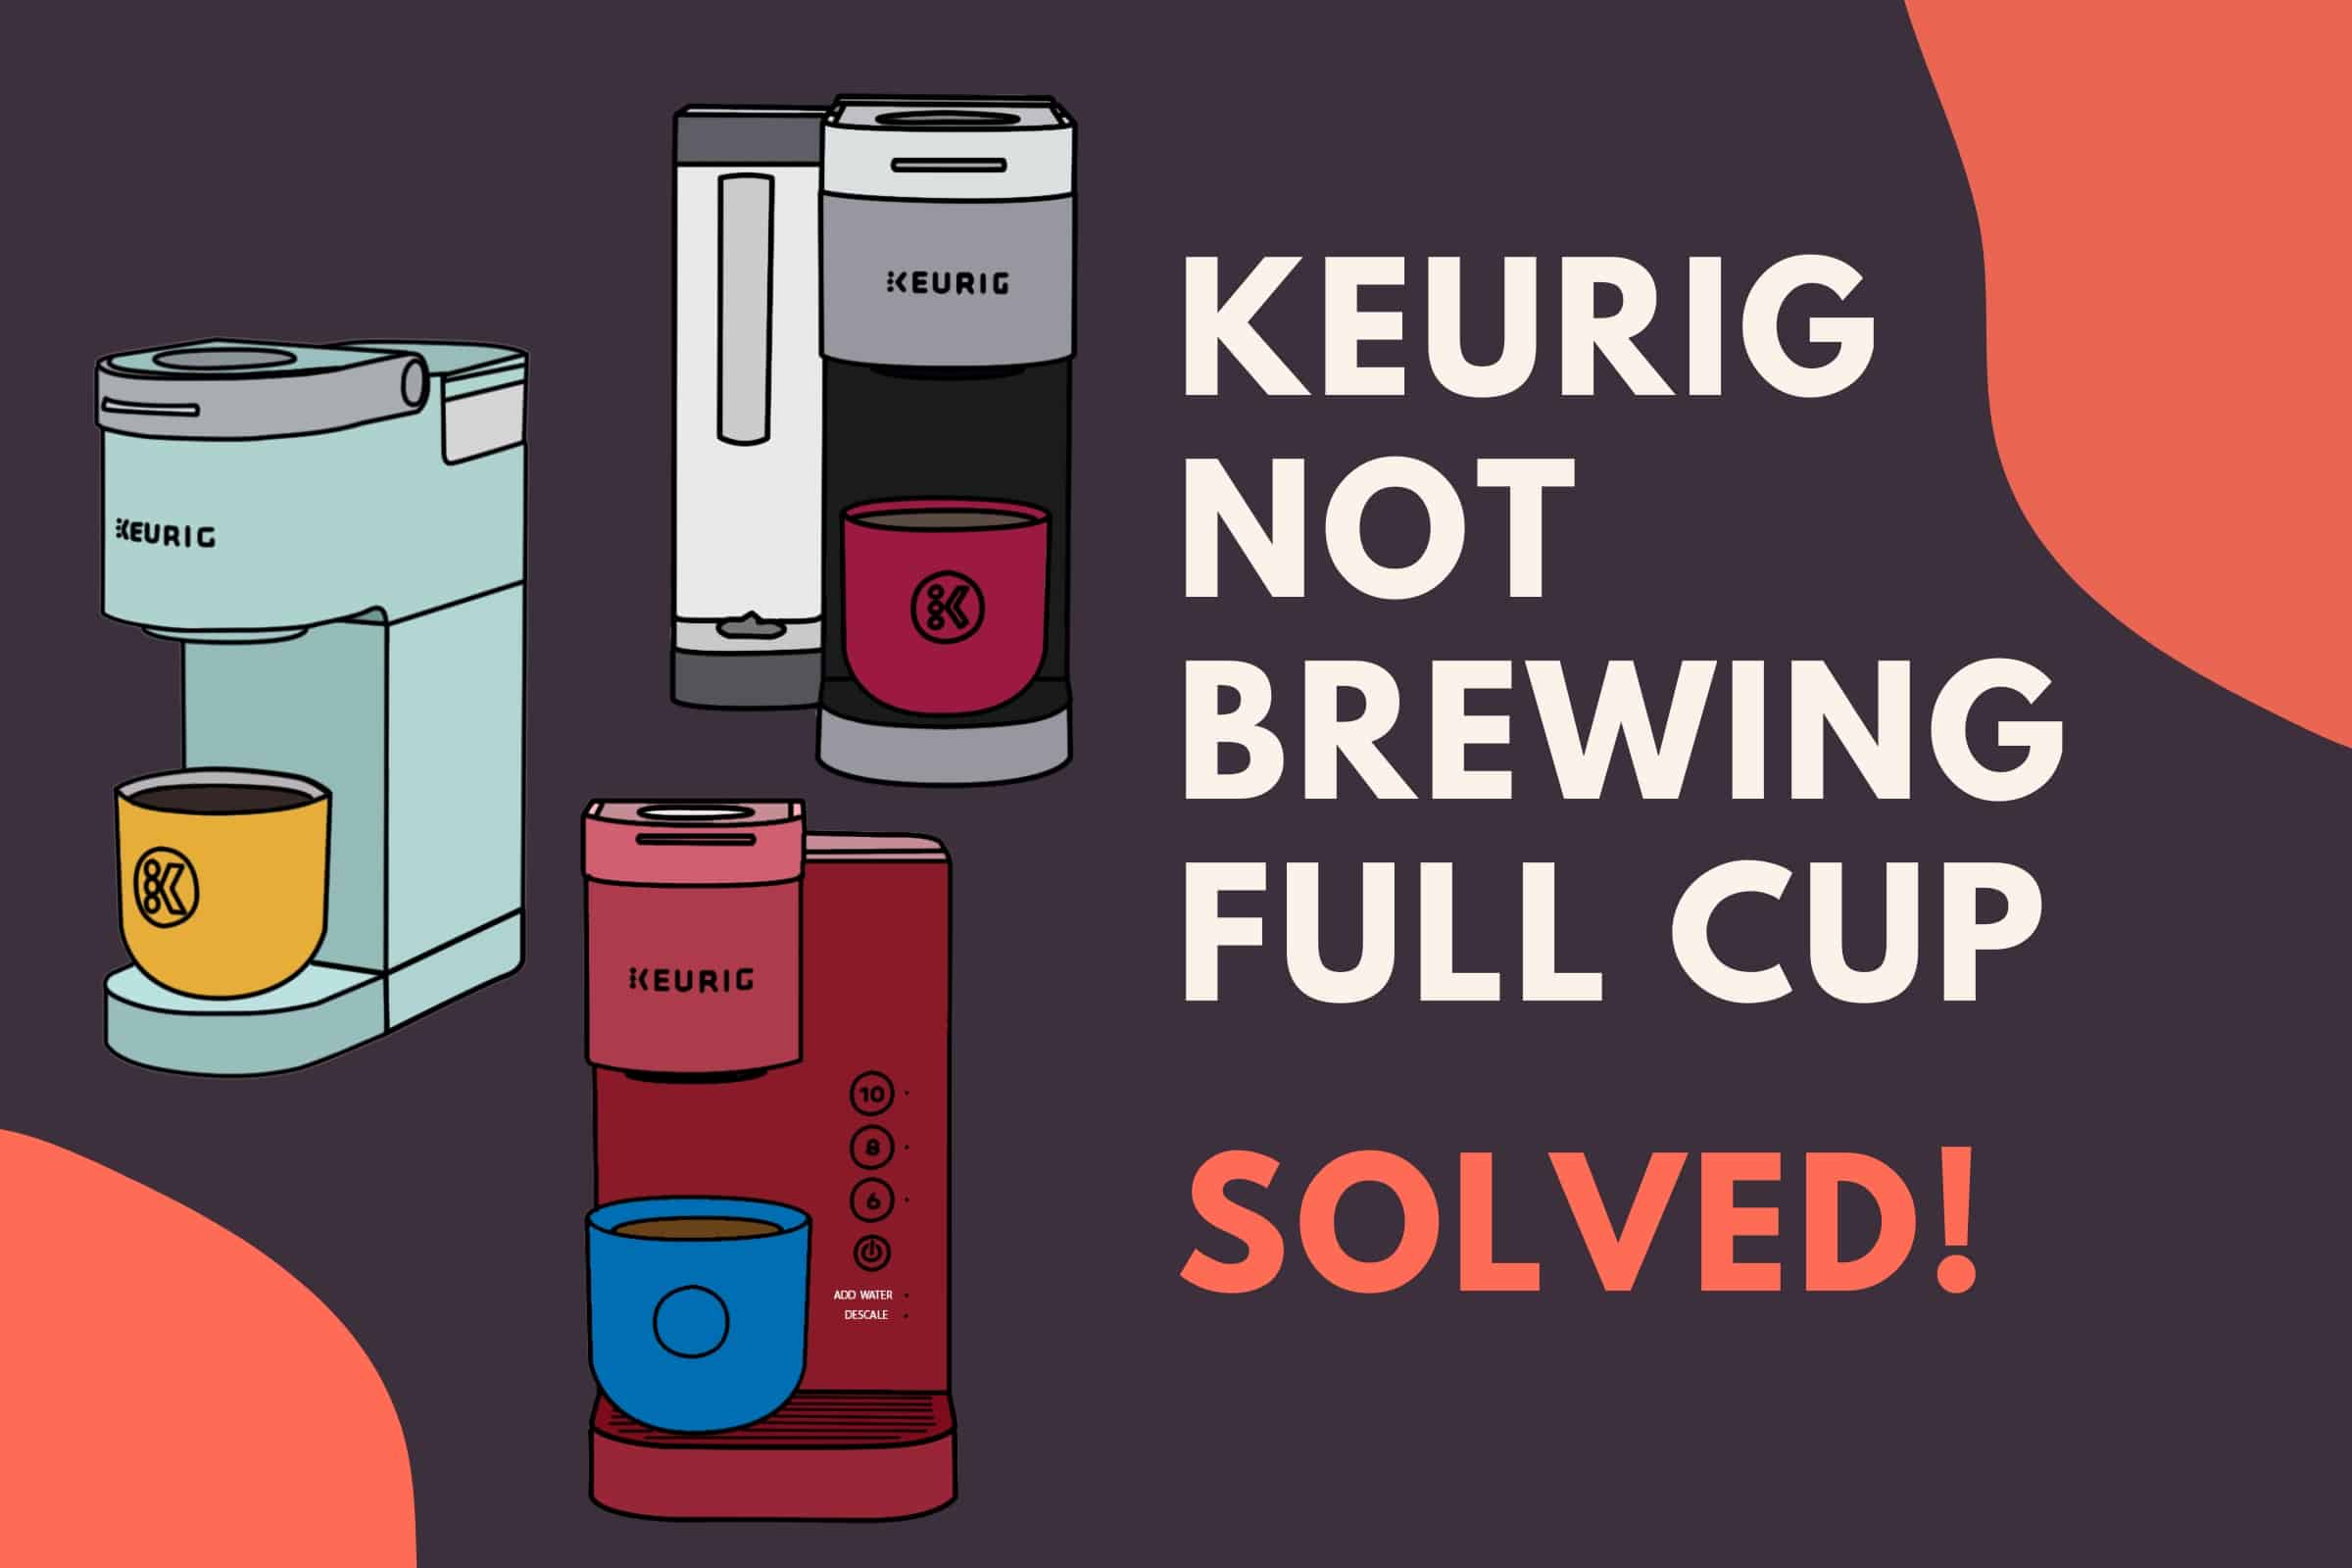 Keurig not brewing full cup